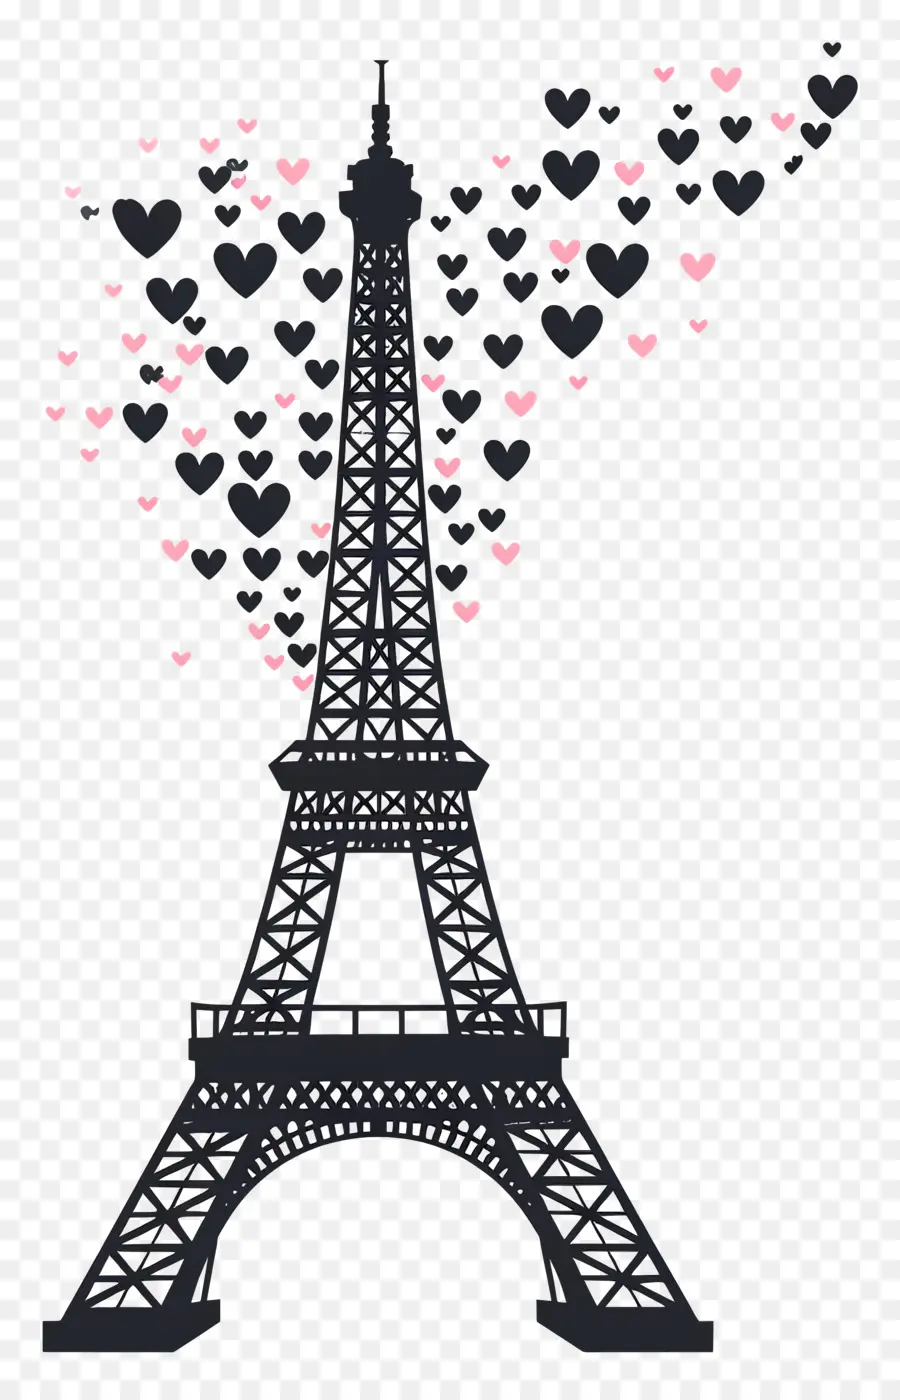 torre eiffel - Silhouette della torre Eiffel con cuori volanti che simboleggiano l'amore